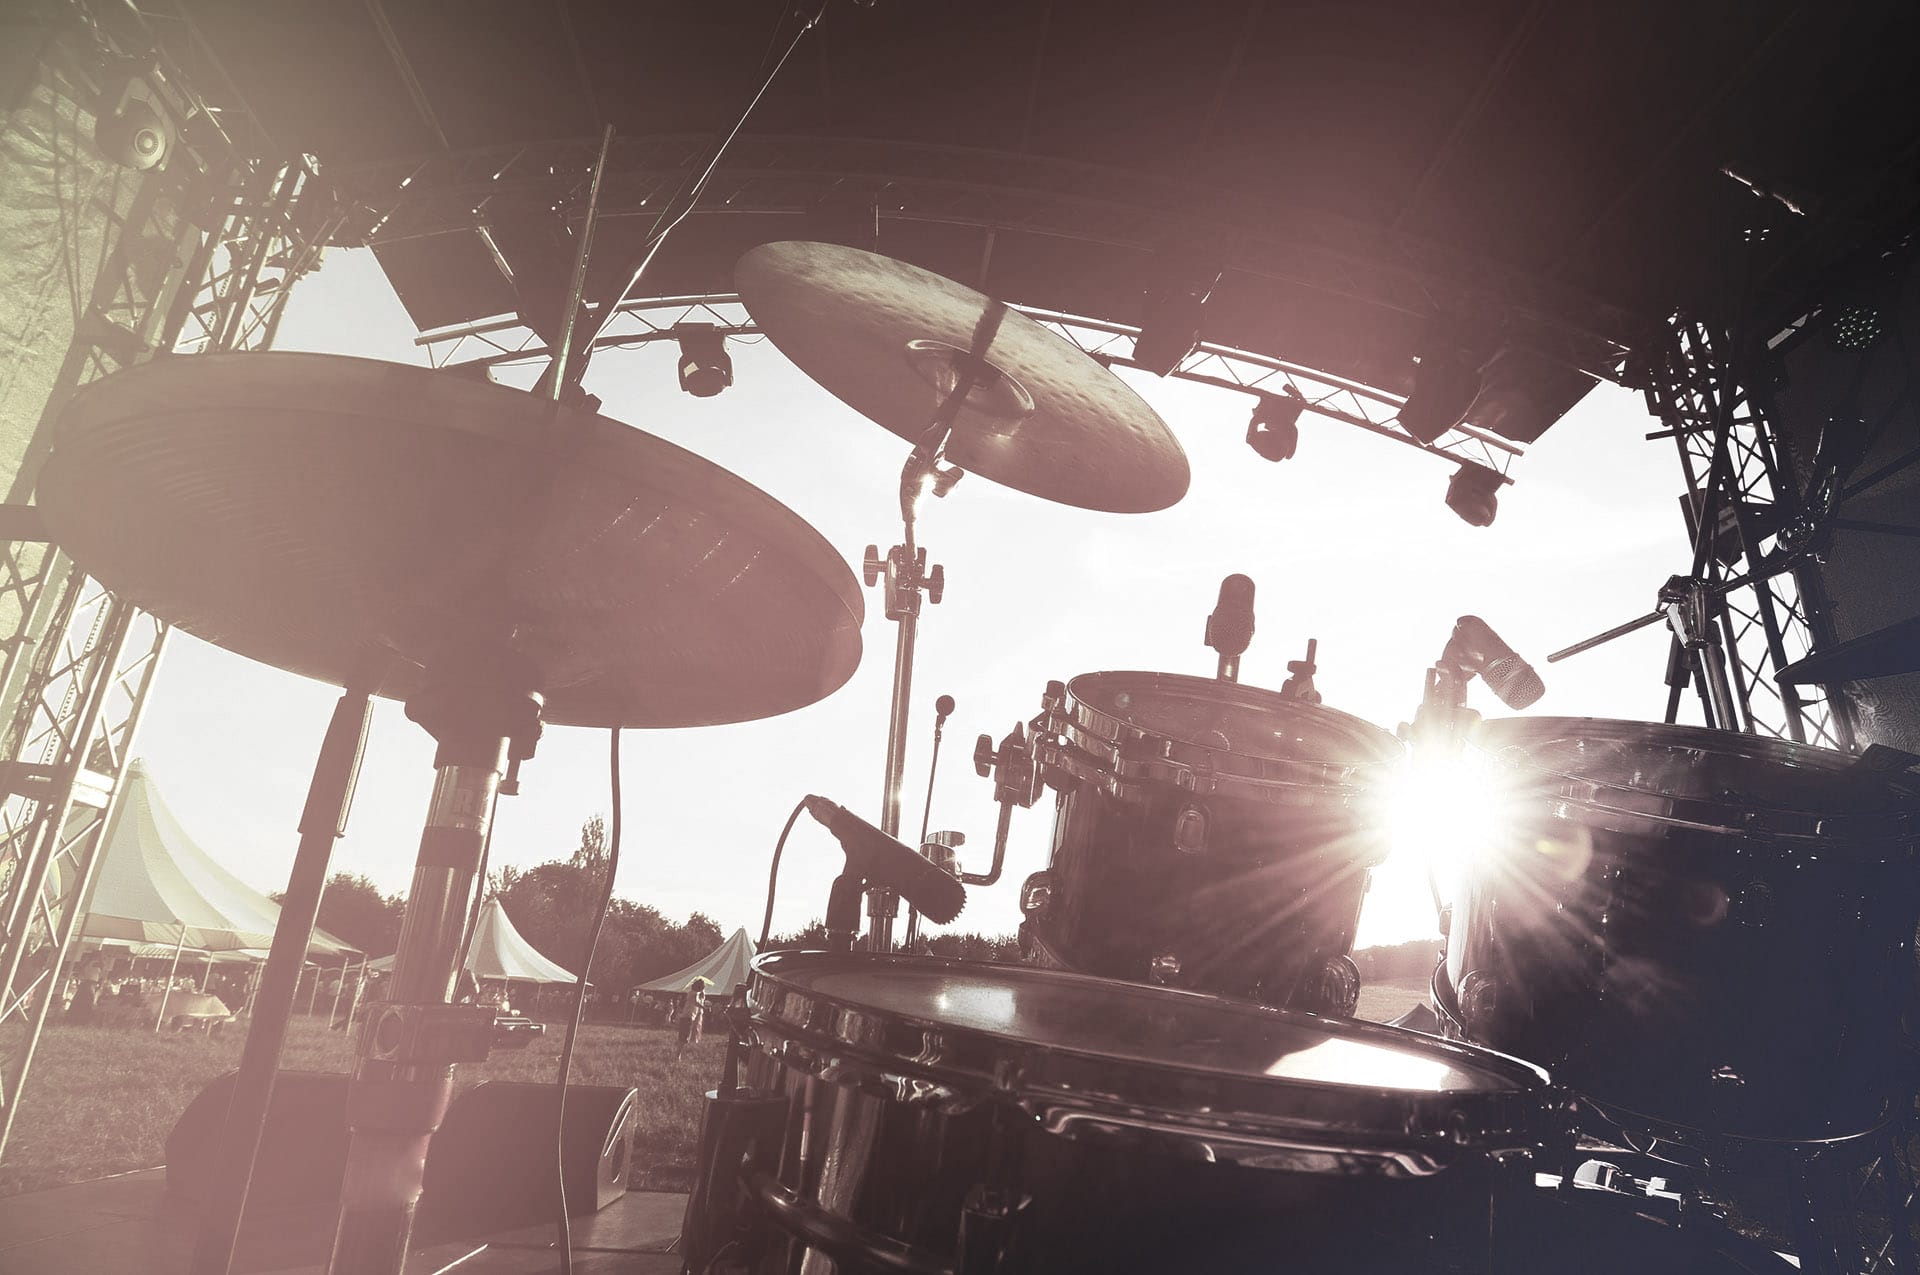 Ein Drumset auf einer Bühne bei Sonnenuntergang